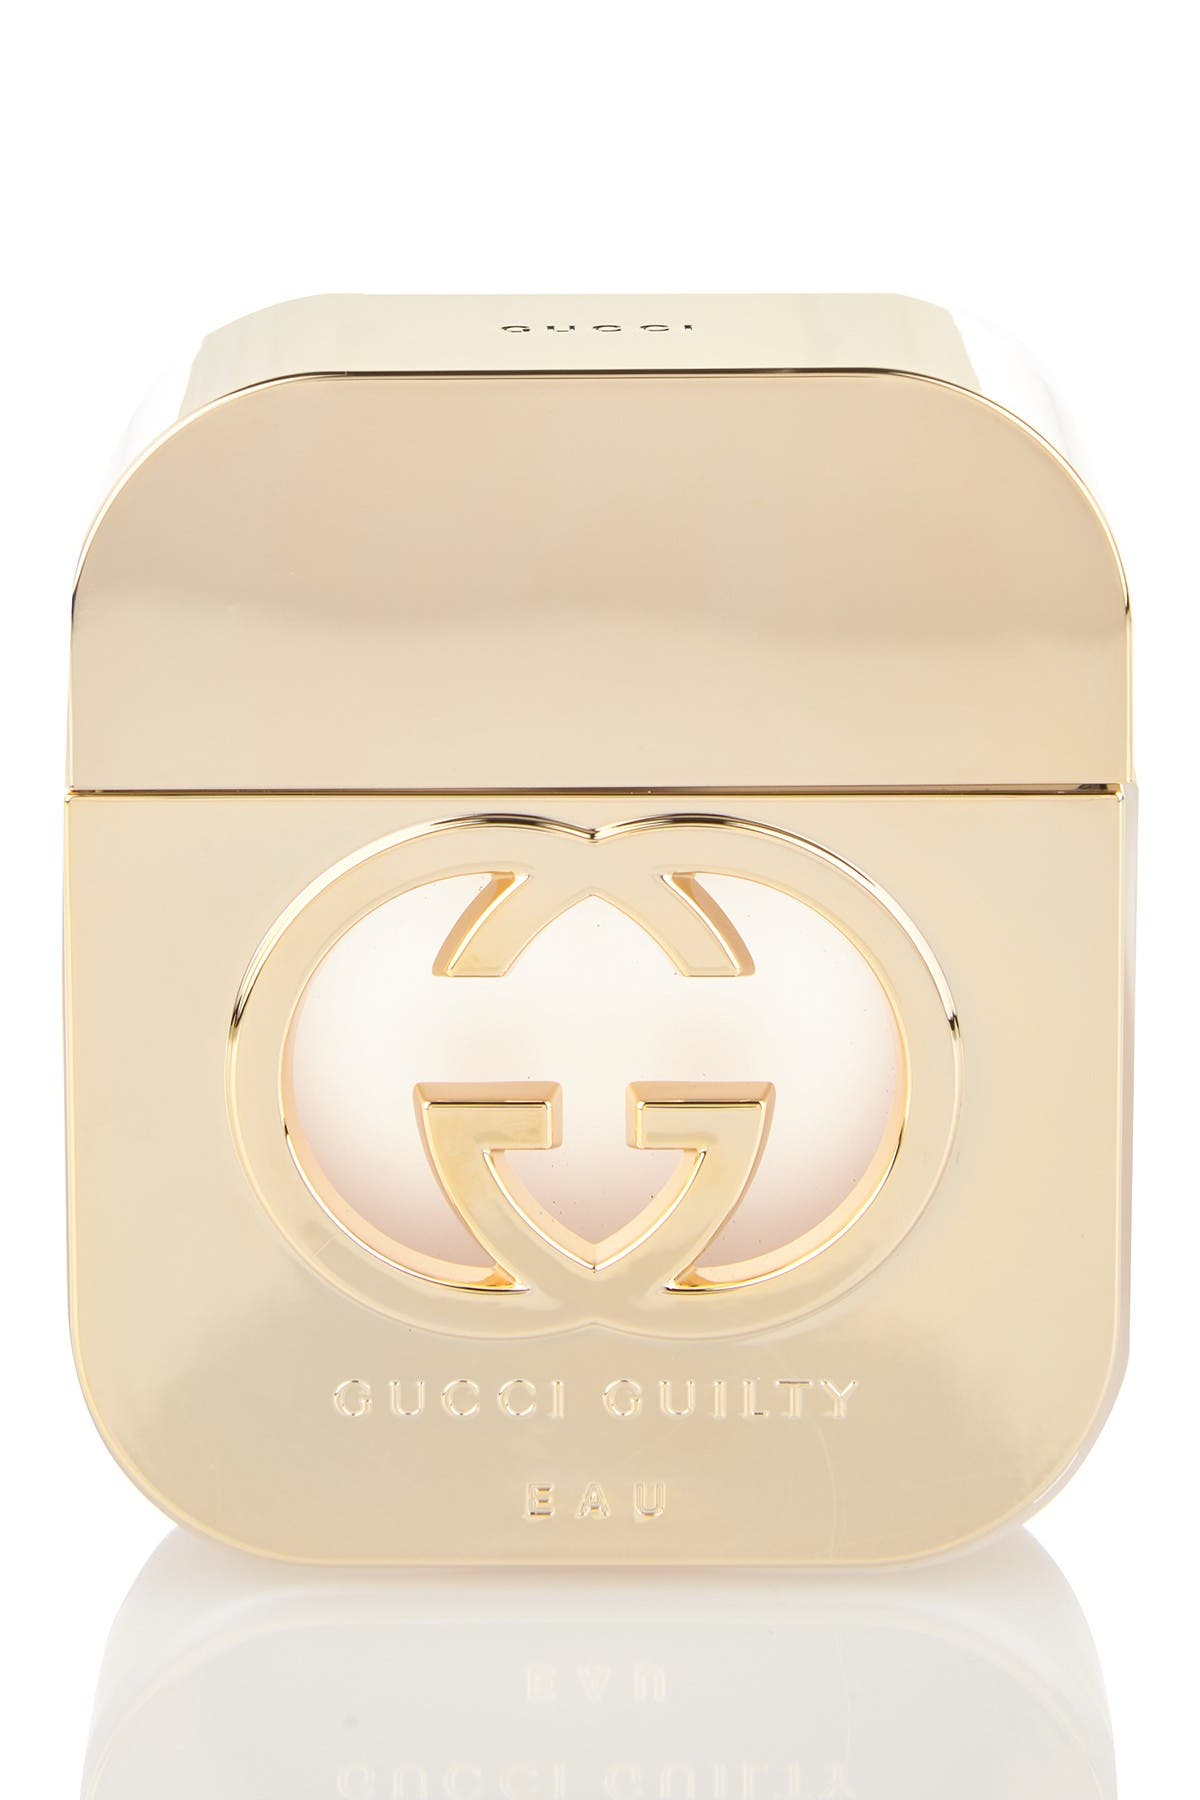 Gucci guilty | Guilty Eau de Toilette 